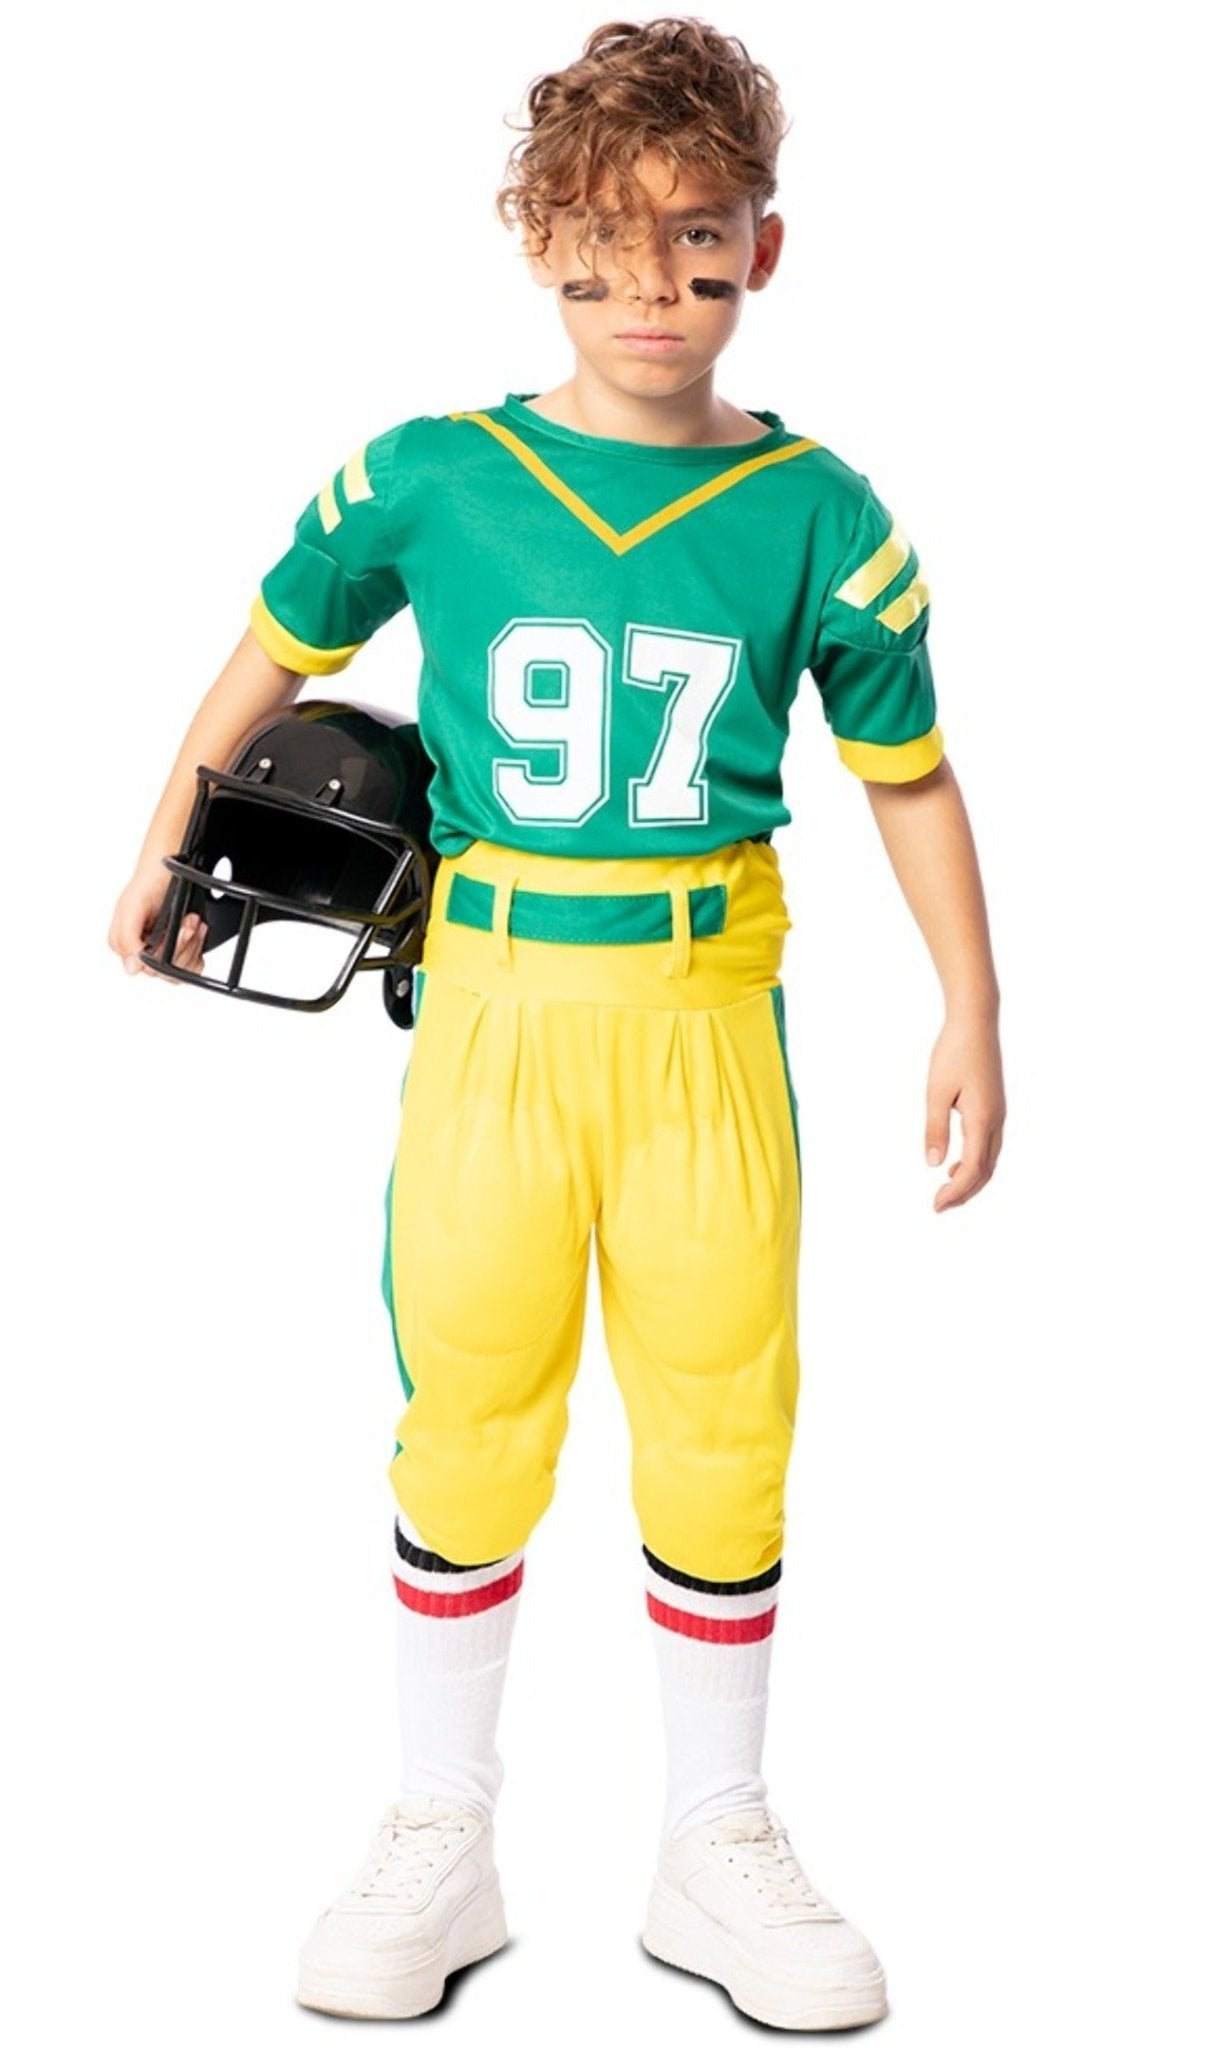 Comprar online Disfraz de Jugador Rugby Verde para niño